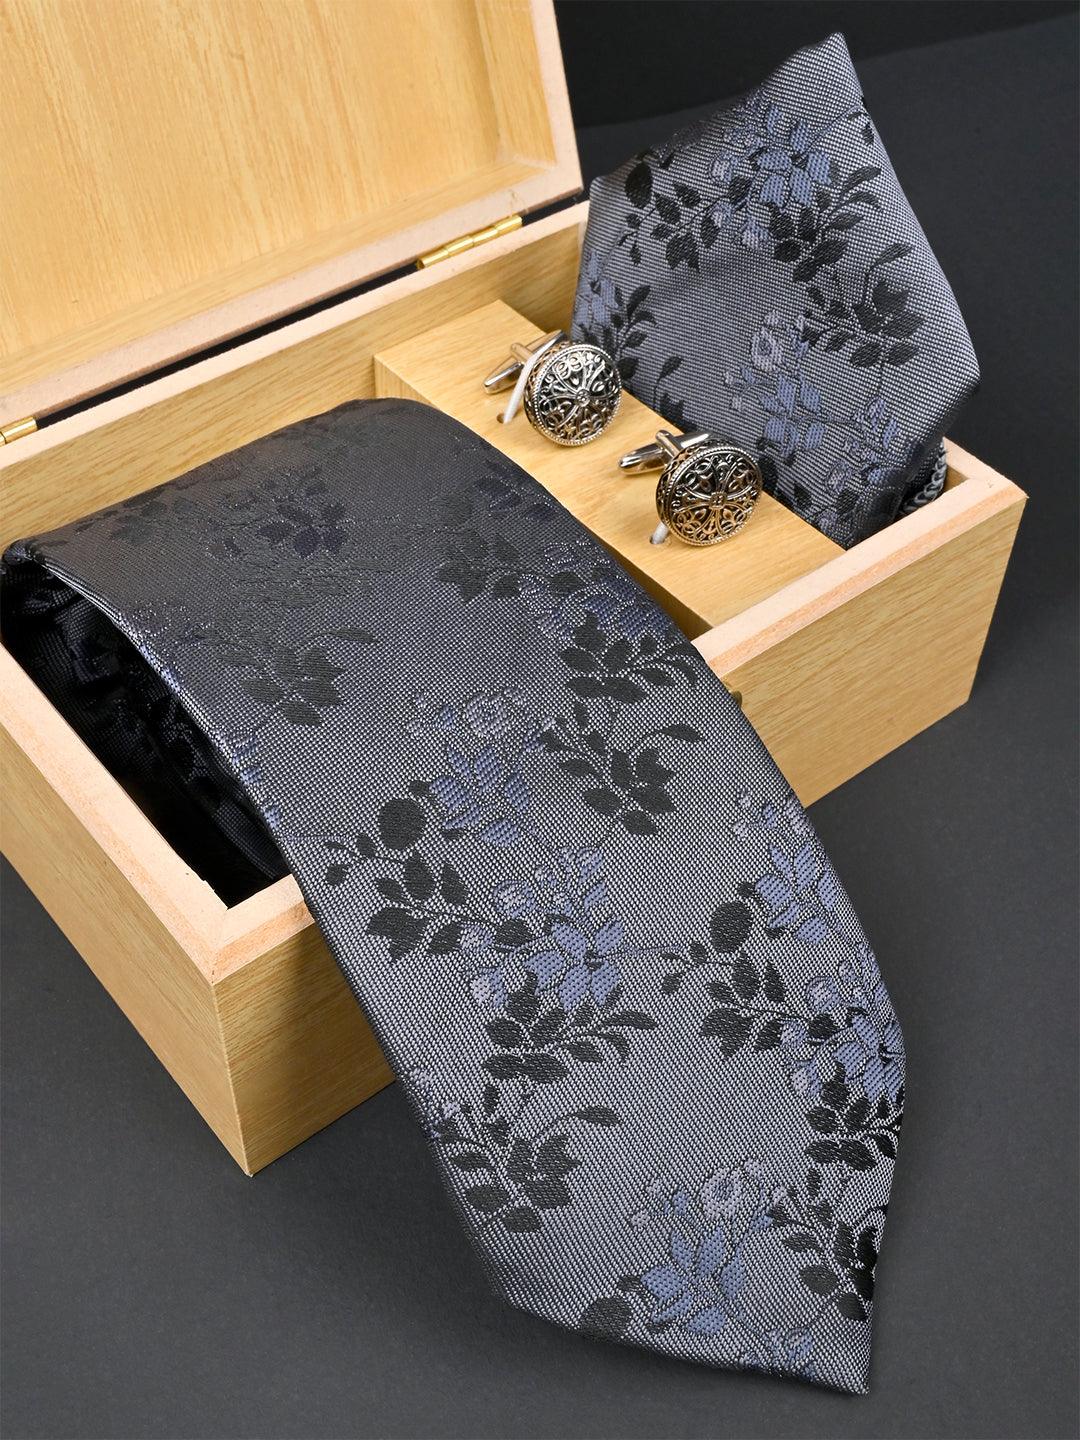 Grey Floral Micro Silk Necktie With Pocket Square & Cufflinks - Tistabene